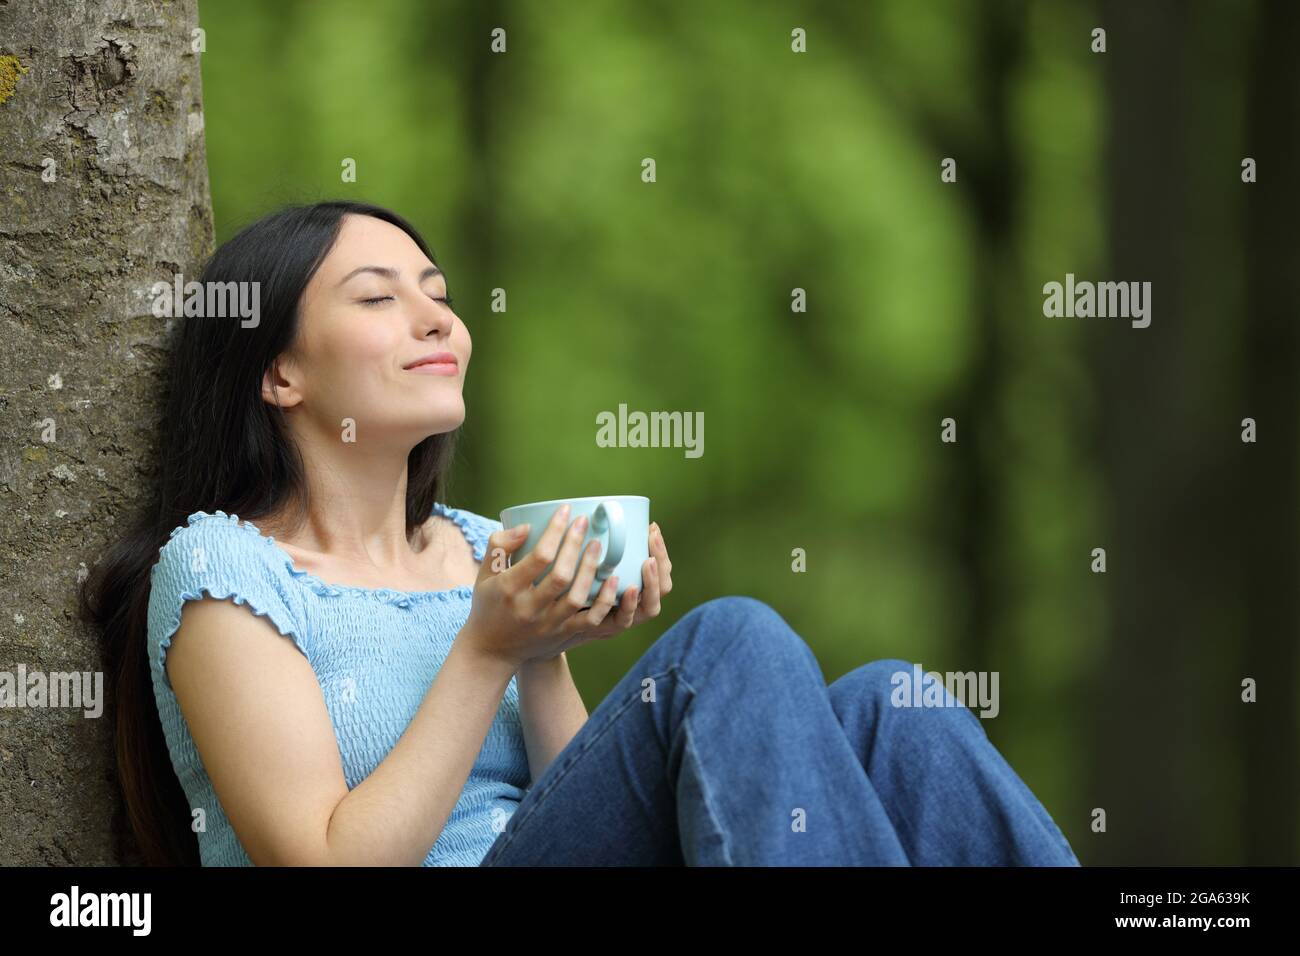 Bonne femme asiatique buvant un café relaxant respirant de l'air frais assis dans une forêt Banque D'Images